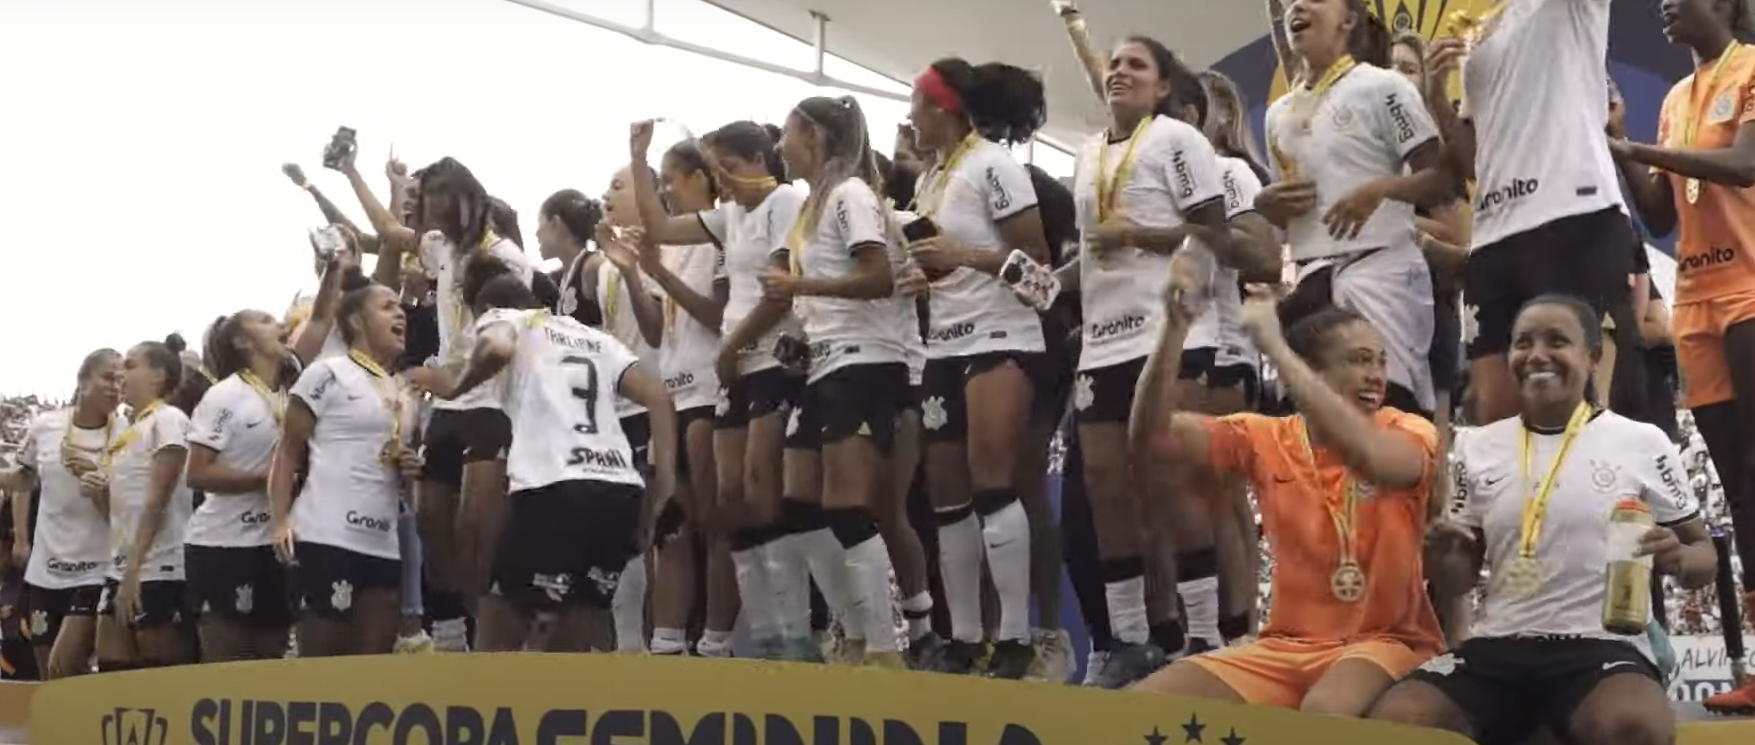 Corinthians 4 x 1 Flamengo  Supercopa do Brasil Feminina: melhores momentos